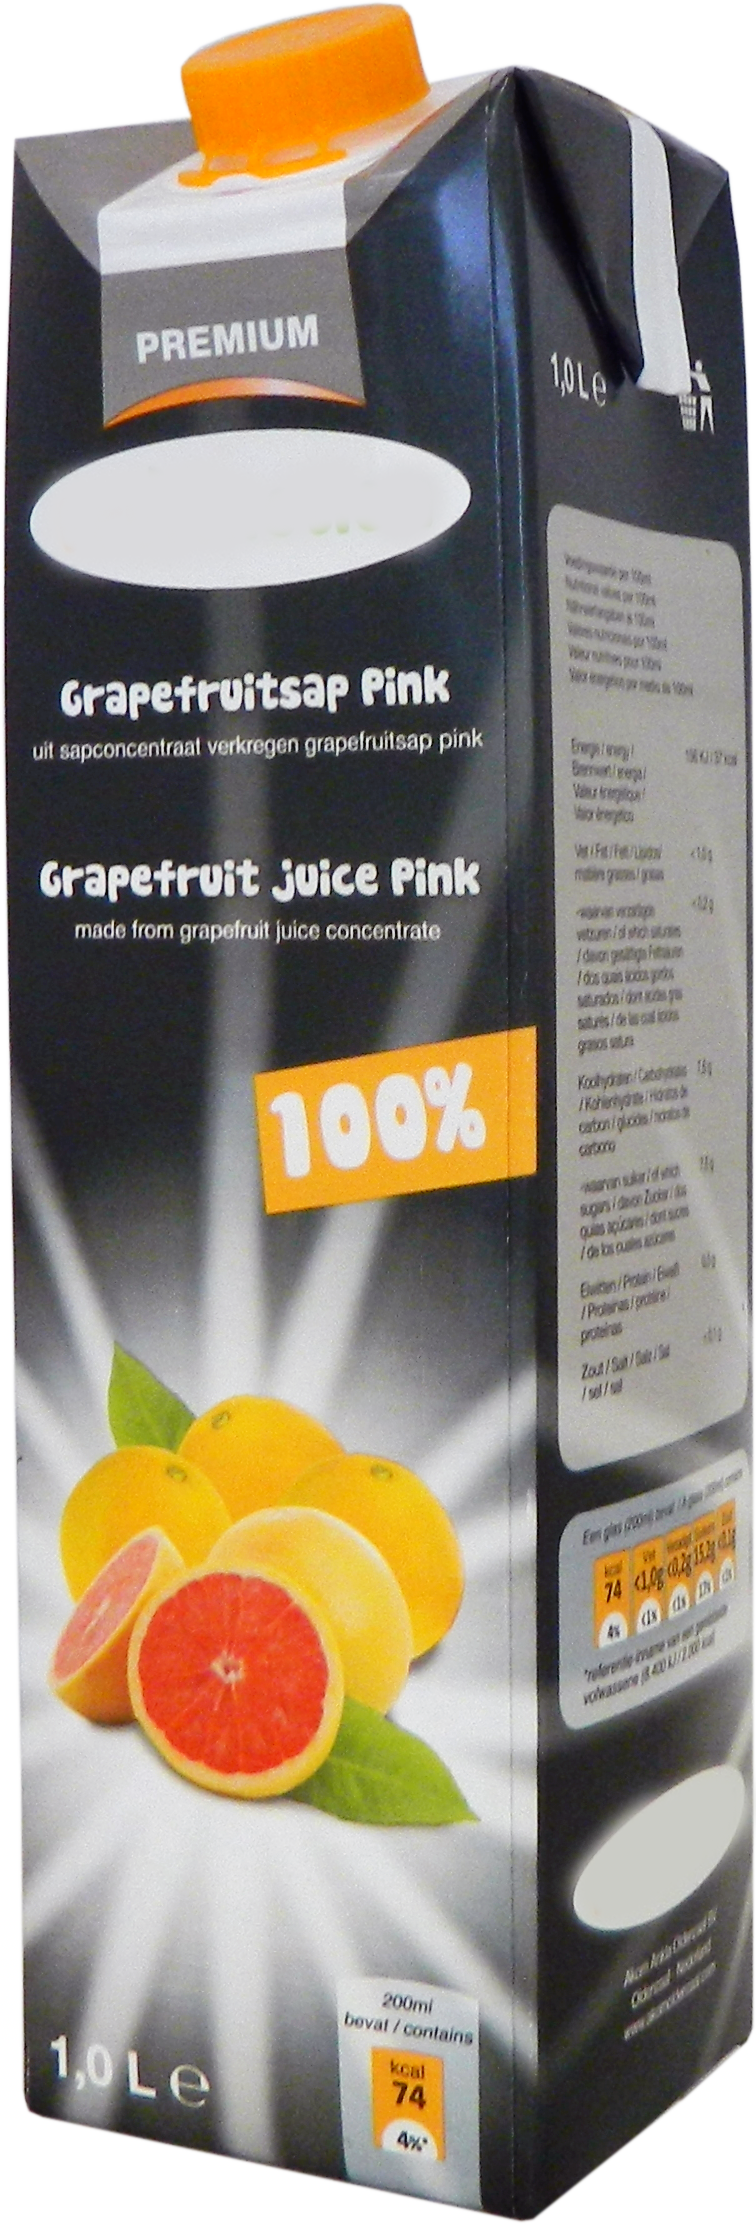 Premium Grapefruit juice 1,0 liter